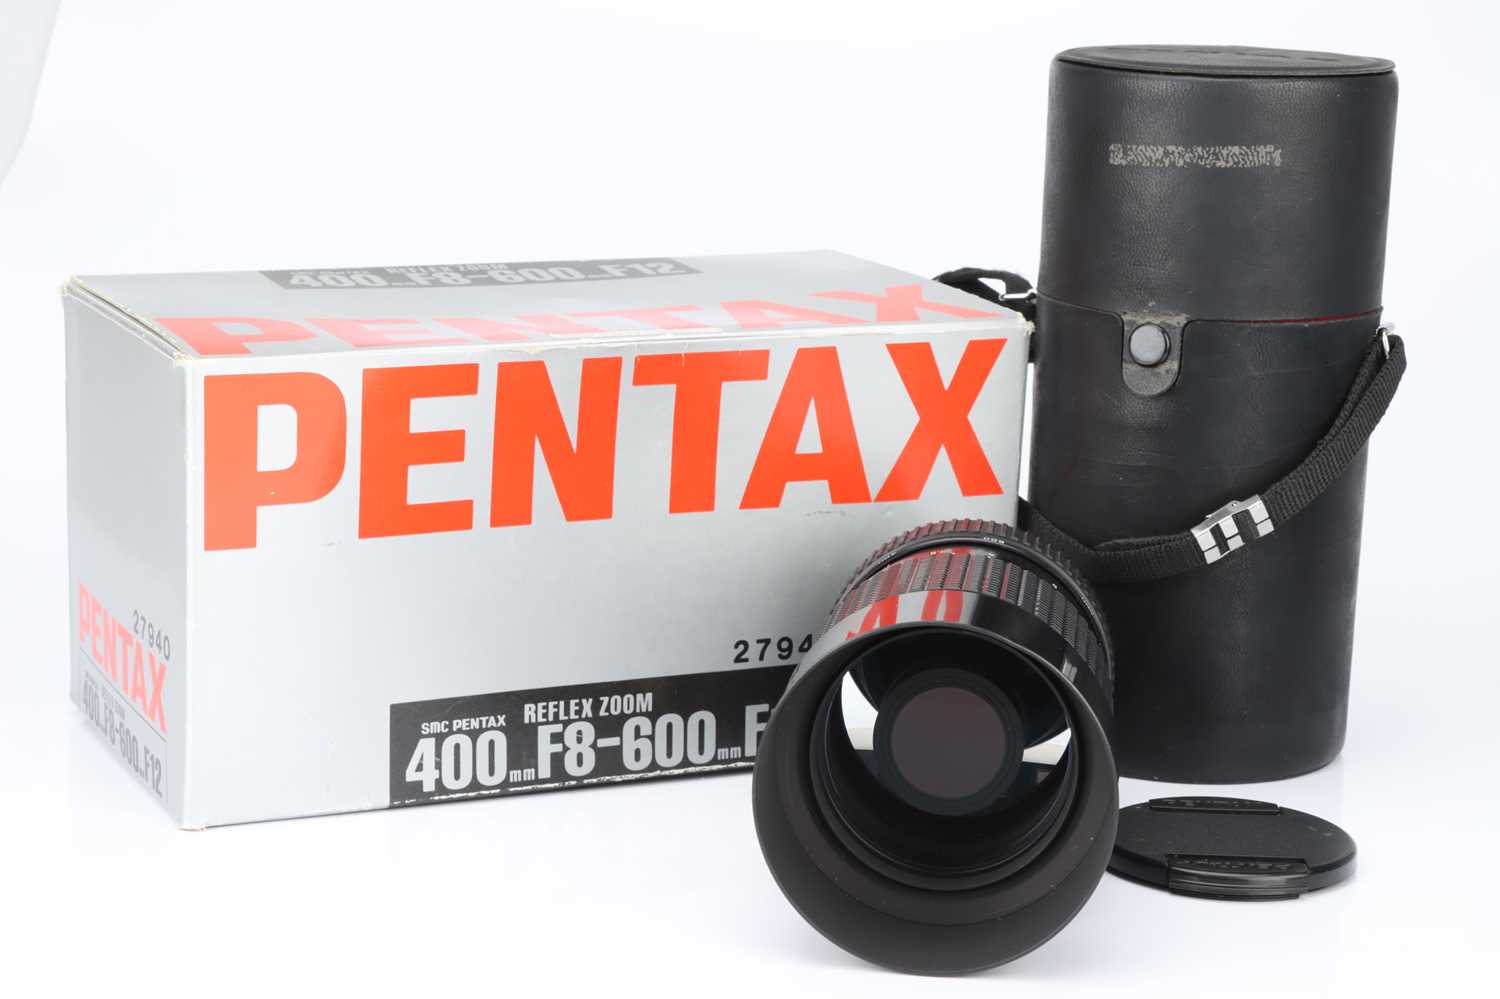 PENTAX ペンタックス REFLEX 400-600mm f/8-12